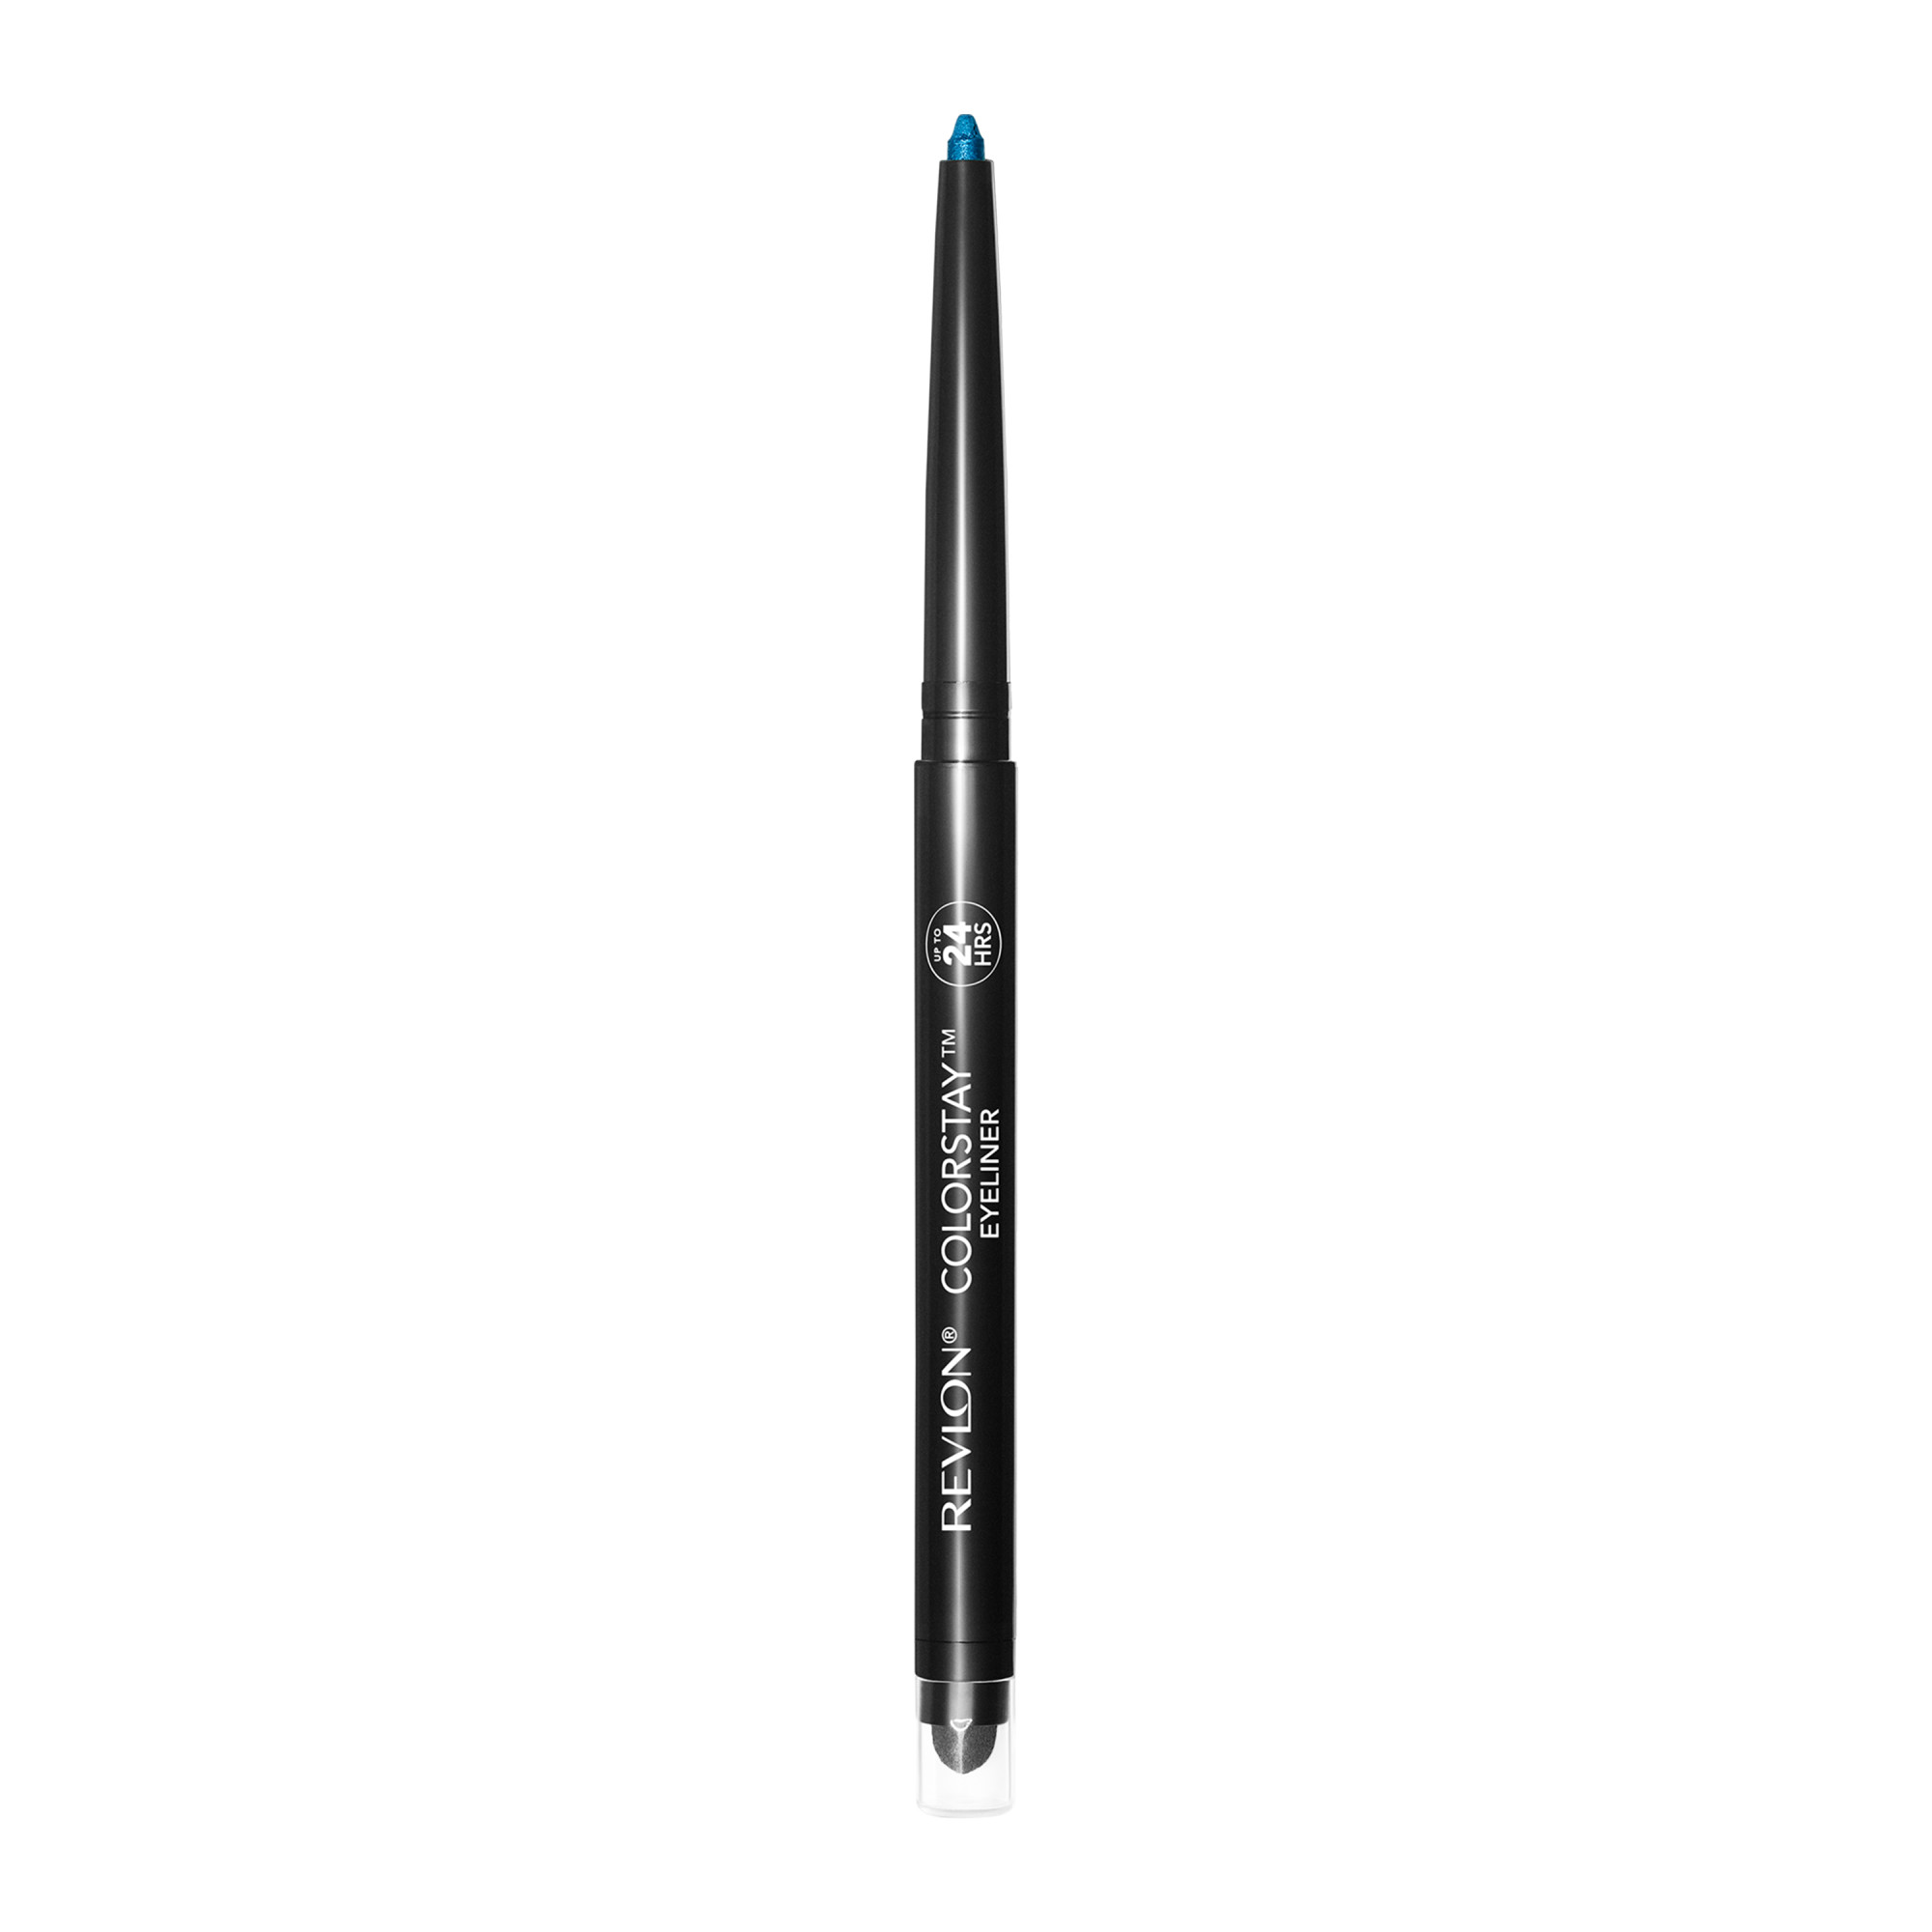 Revlon ColorStay Waterproof Eyeliner Pencil, 24HR Wear, Built-in Sharpener, 205 Sapphire, 0.01 oz - image 3 of 9